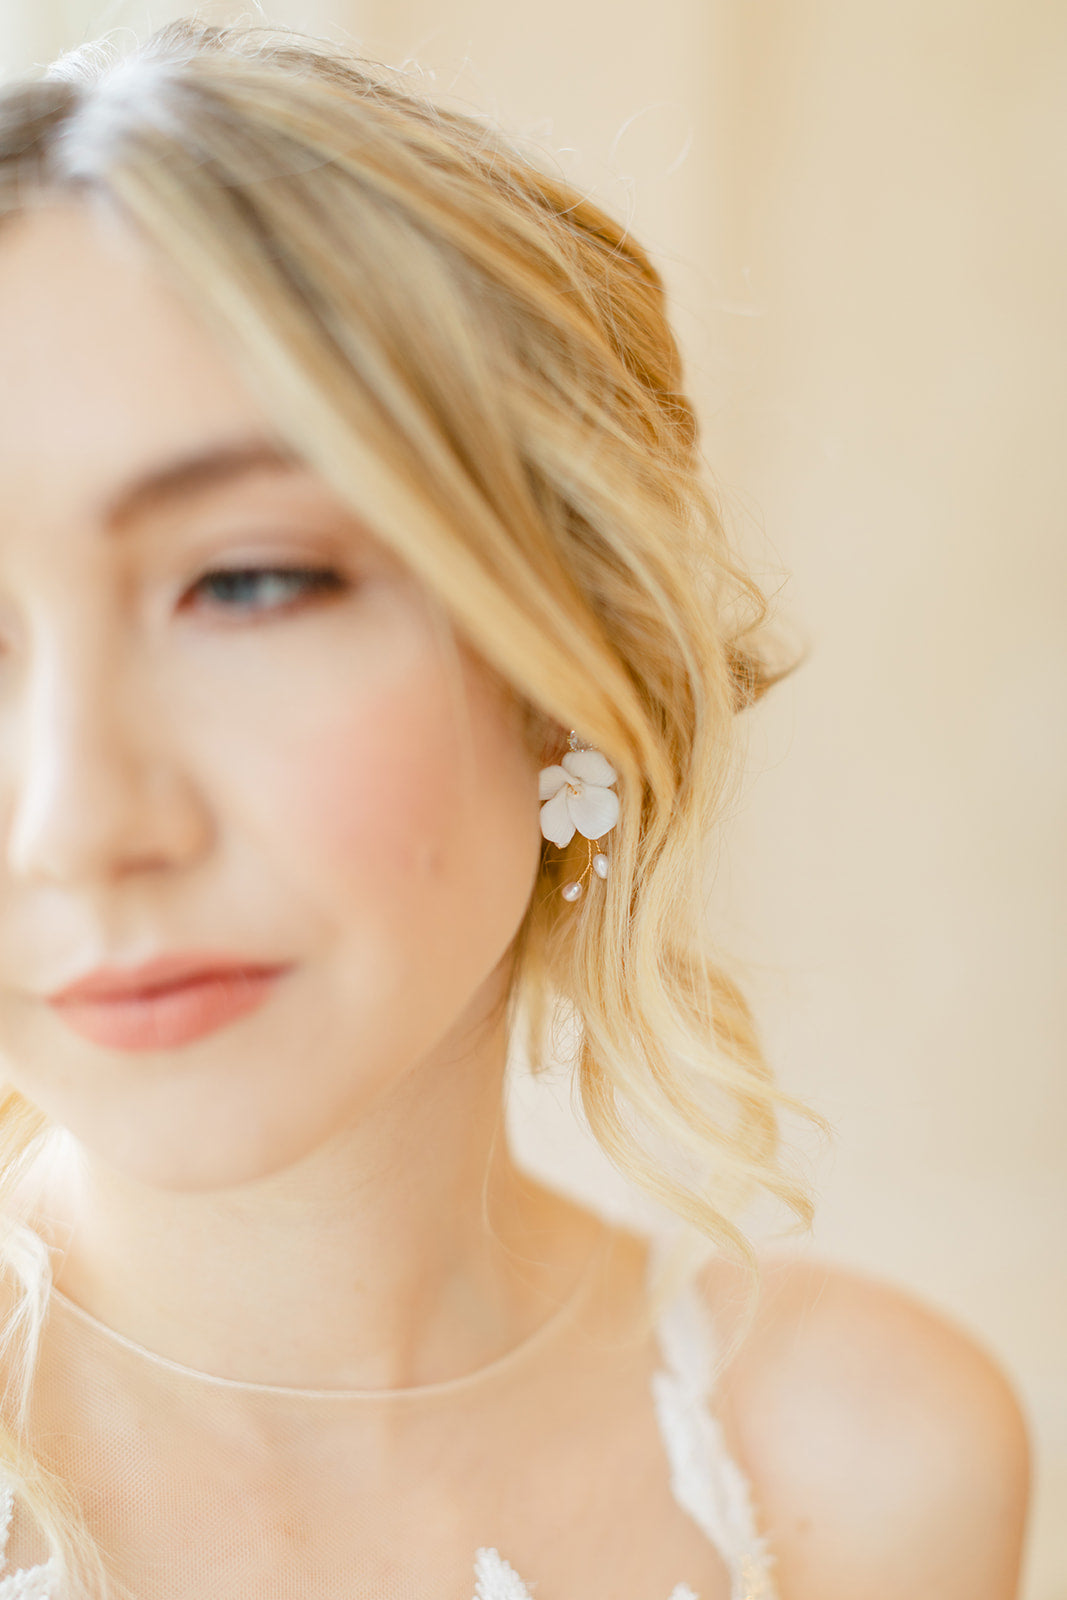 SWEETPEA // Ceramic floral bridal earrings